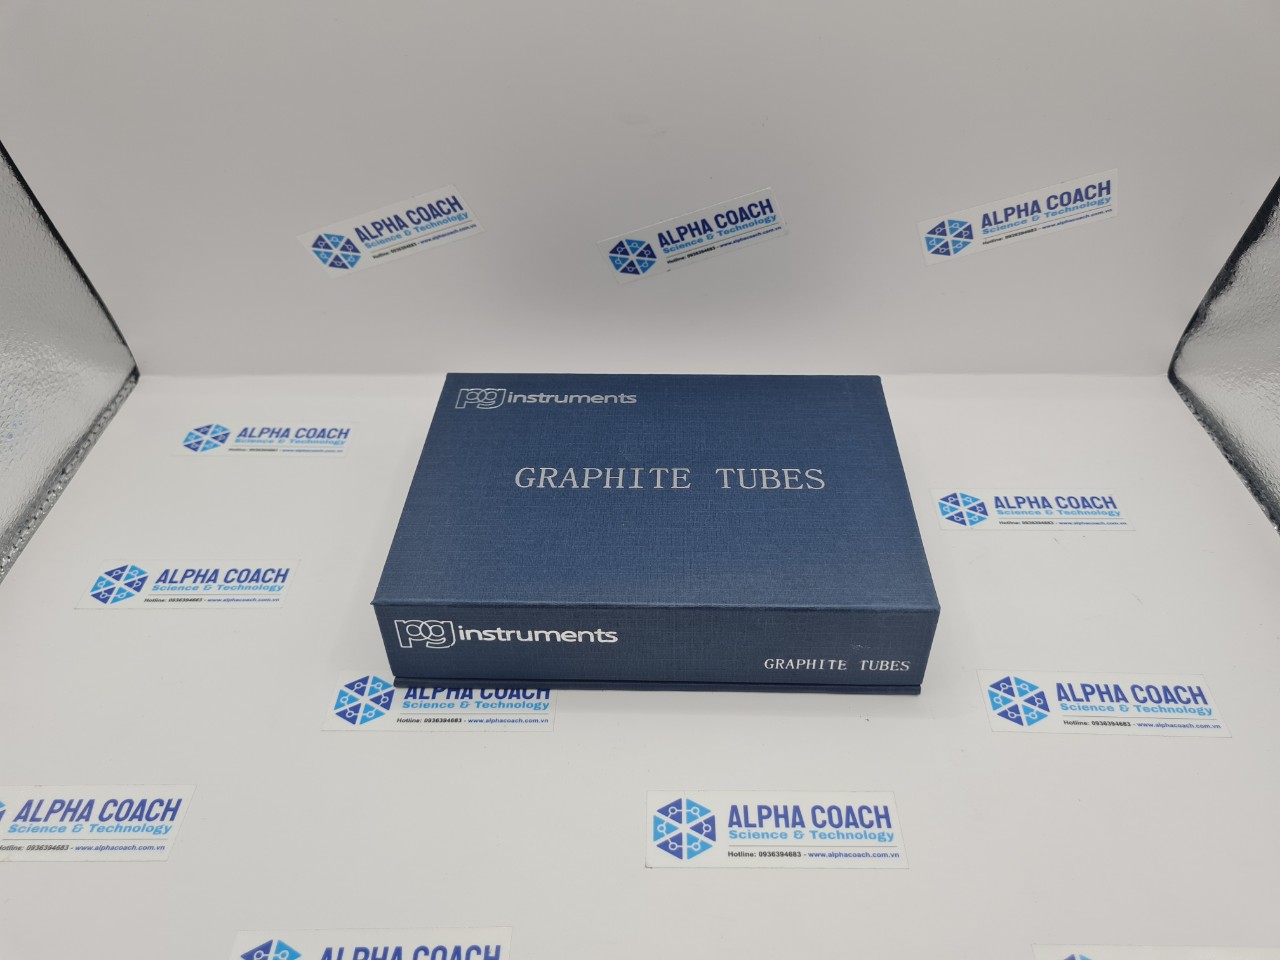 Cuvette graphite cho lò graphite - máy quang phổ hấp thụ nguyên tử AA500 & AA990, Hãng PG Instruments, UK